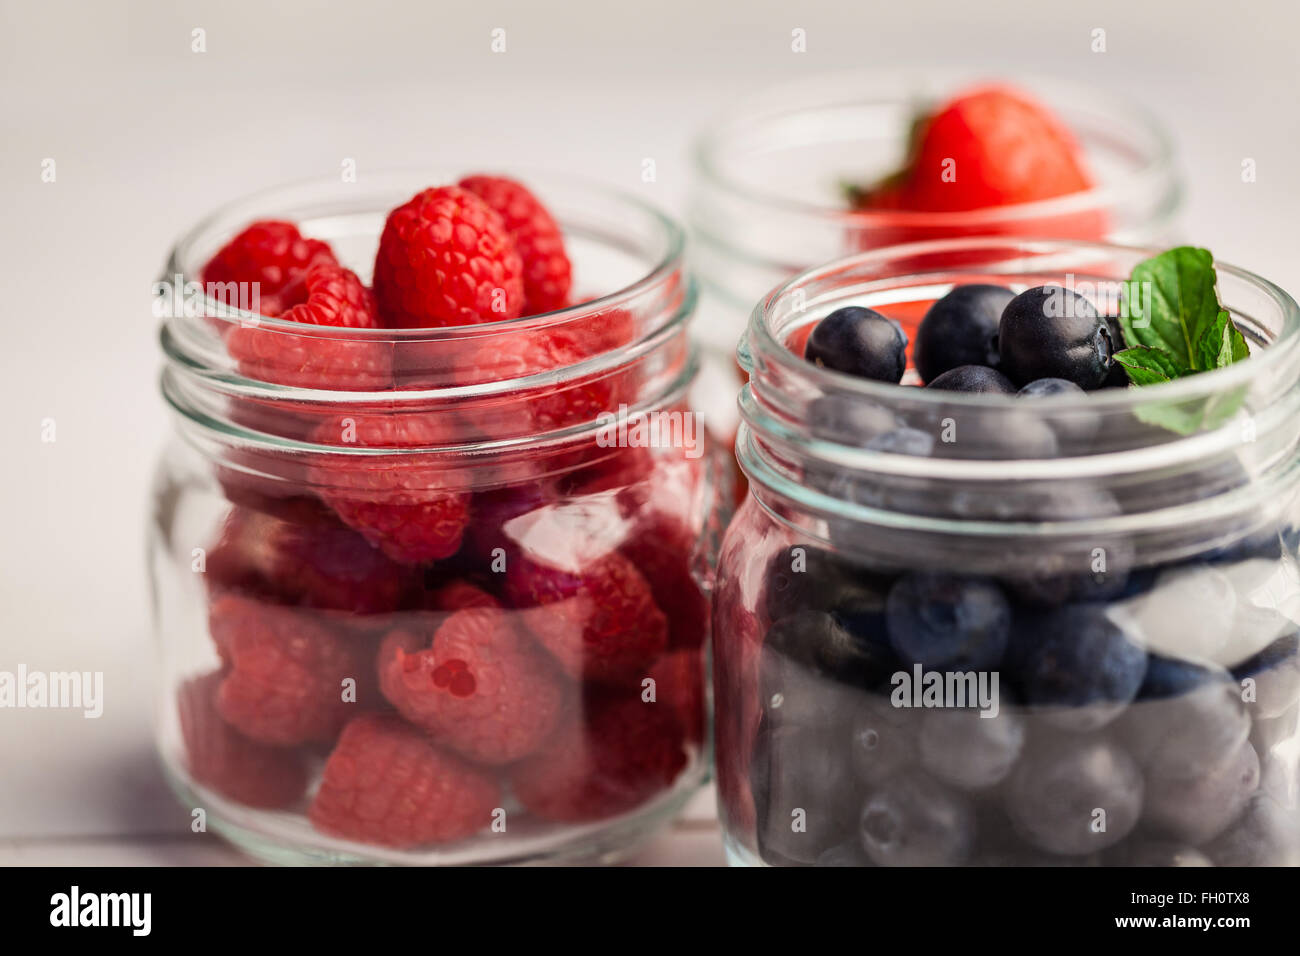 Glass jars of fresh berries Stock Photo